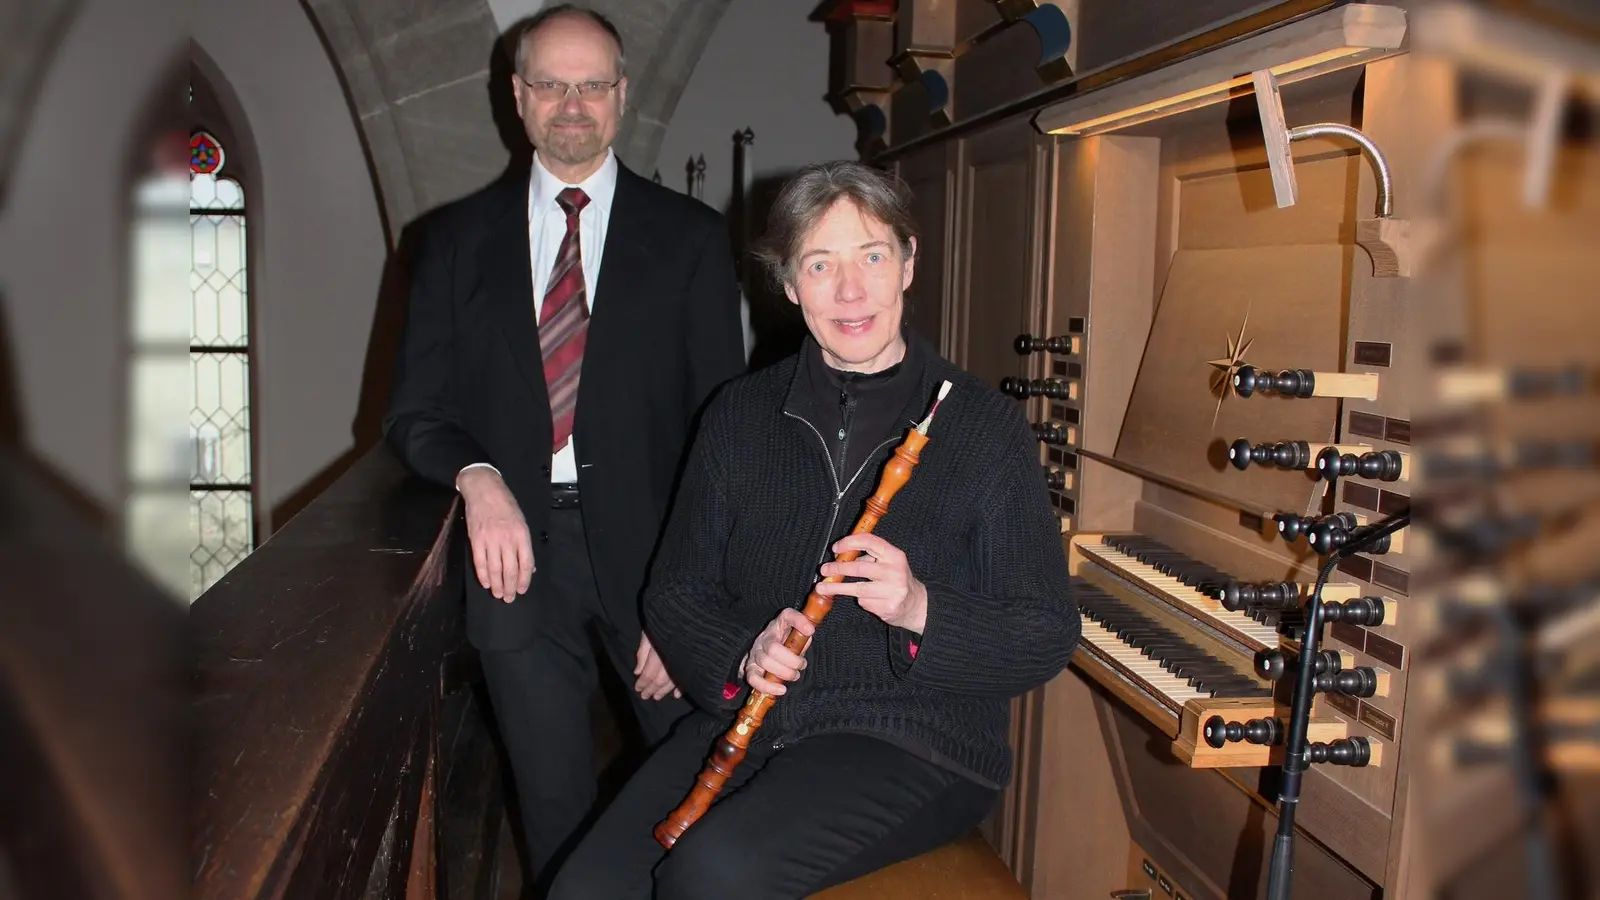 Karla Schröter und Willi Kronenberg, Mitglieder des Ensembles Concert Royal Köln, bestachen in der katholischen Pfarrkirche von Neustadt an der Aisch.  (Foto: Heike Auer)